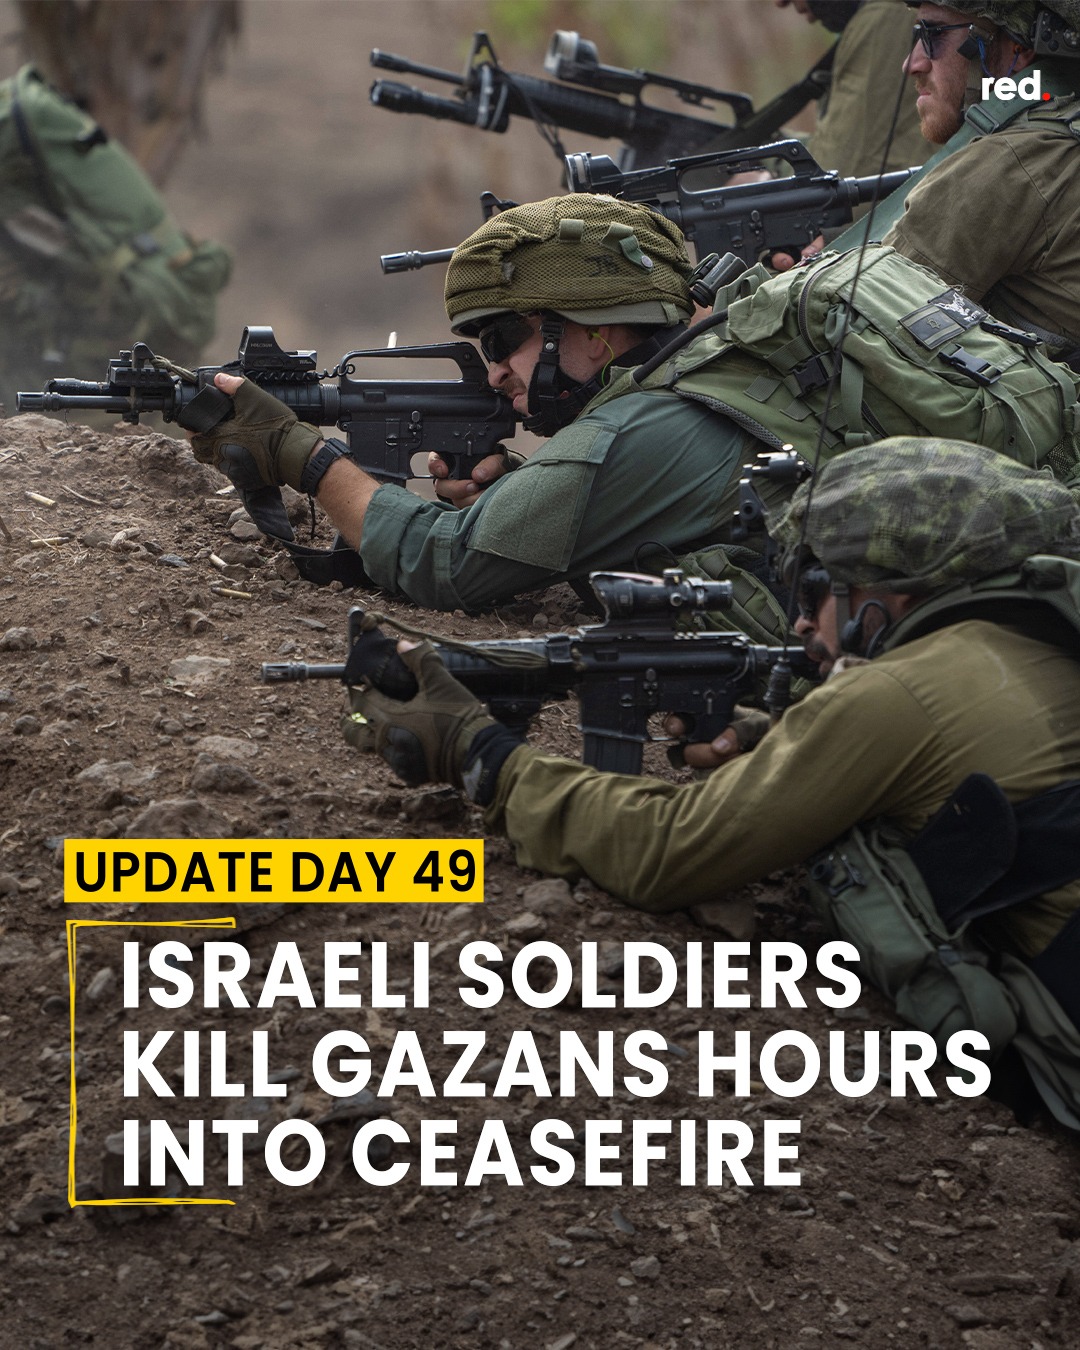 49* giorno. Inizia la tregua con lo scambio degli ostaggi, ma gli israeliani sparano ancora. Un razzo da Gaza.